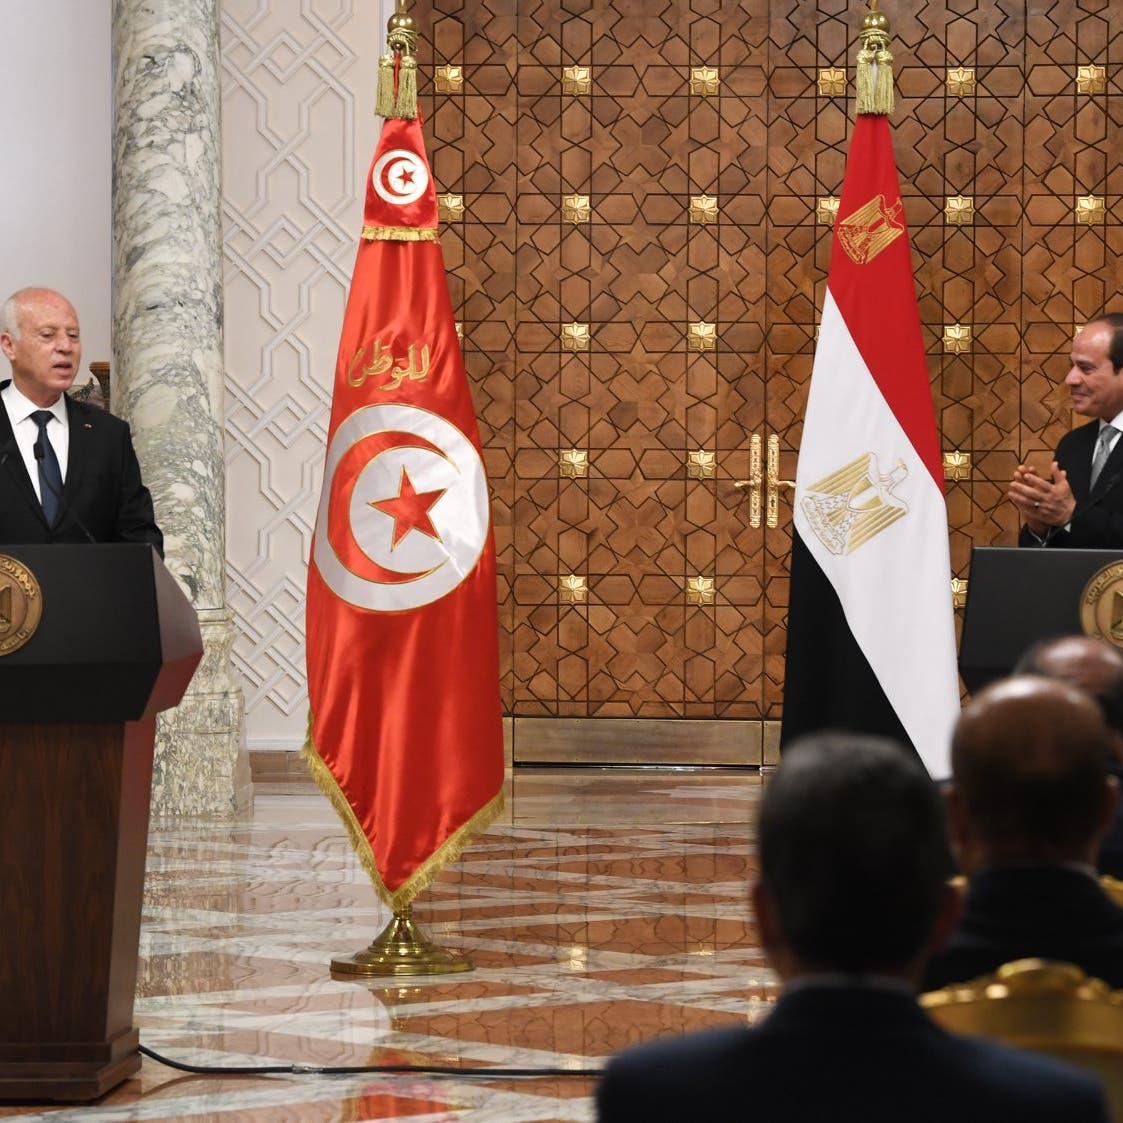 توافق مصري تونسي على مواجهة التدخلات وتجفيف منابع الإرهاب 